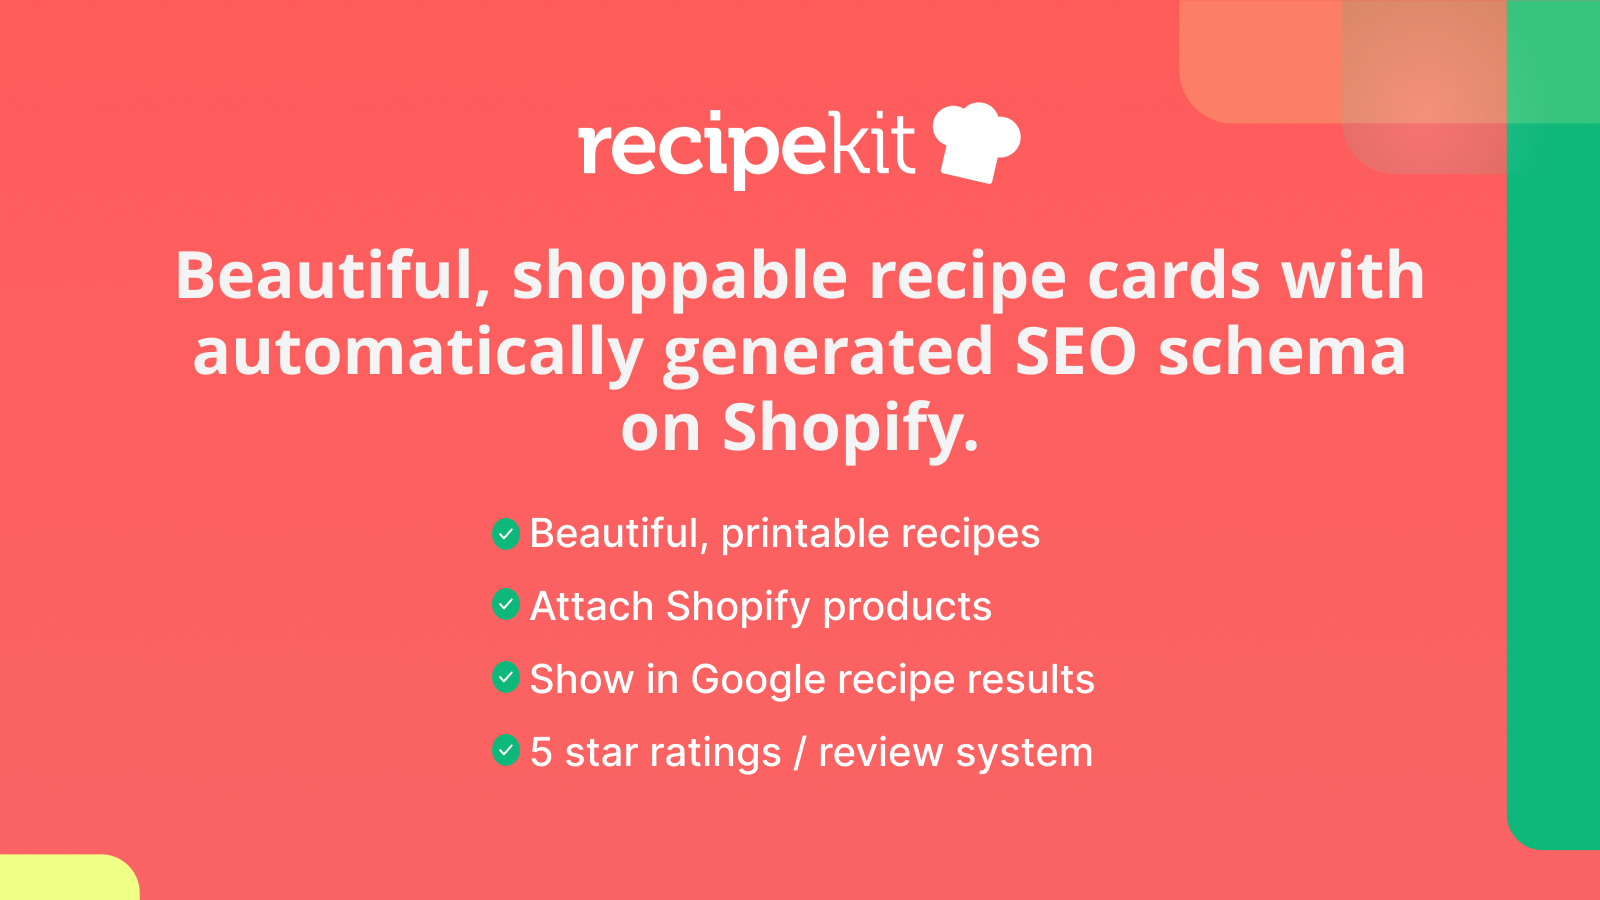 Tarjetas de recetas comprables y hermosas en el blog de su tienda Shopify